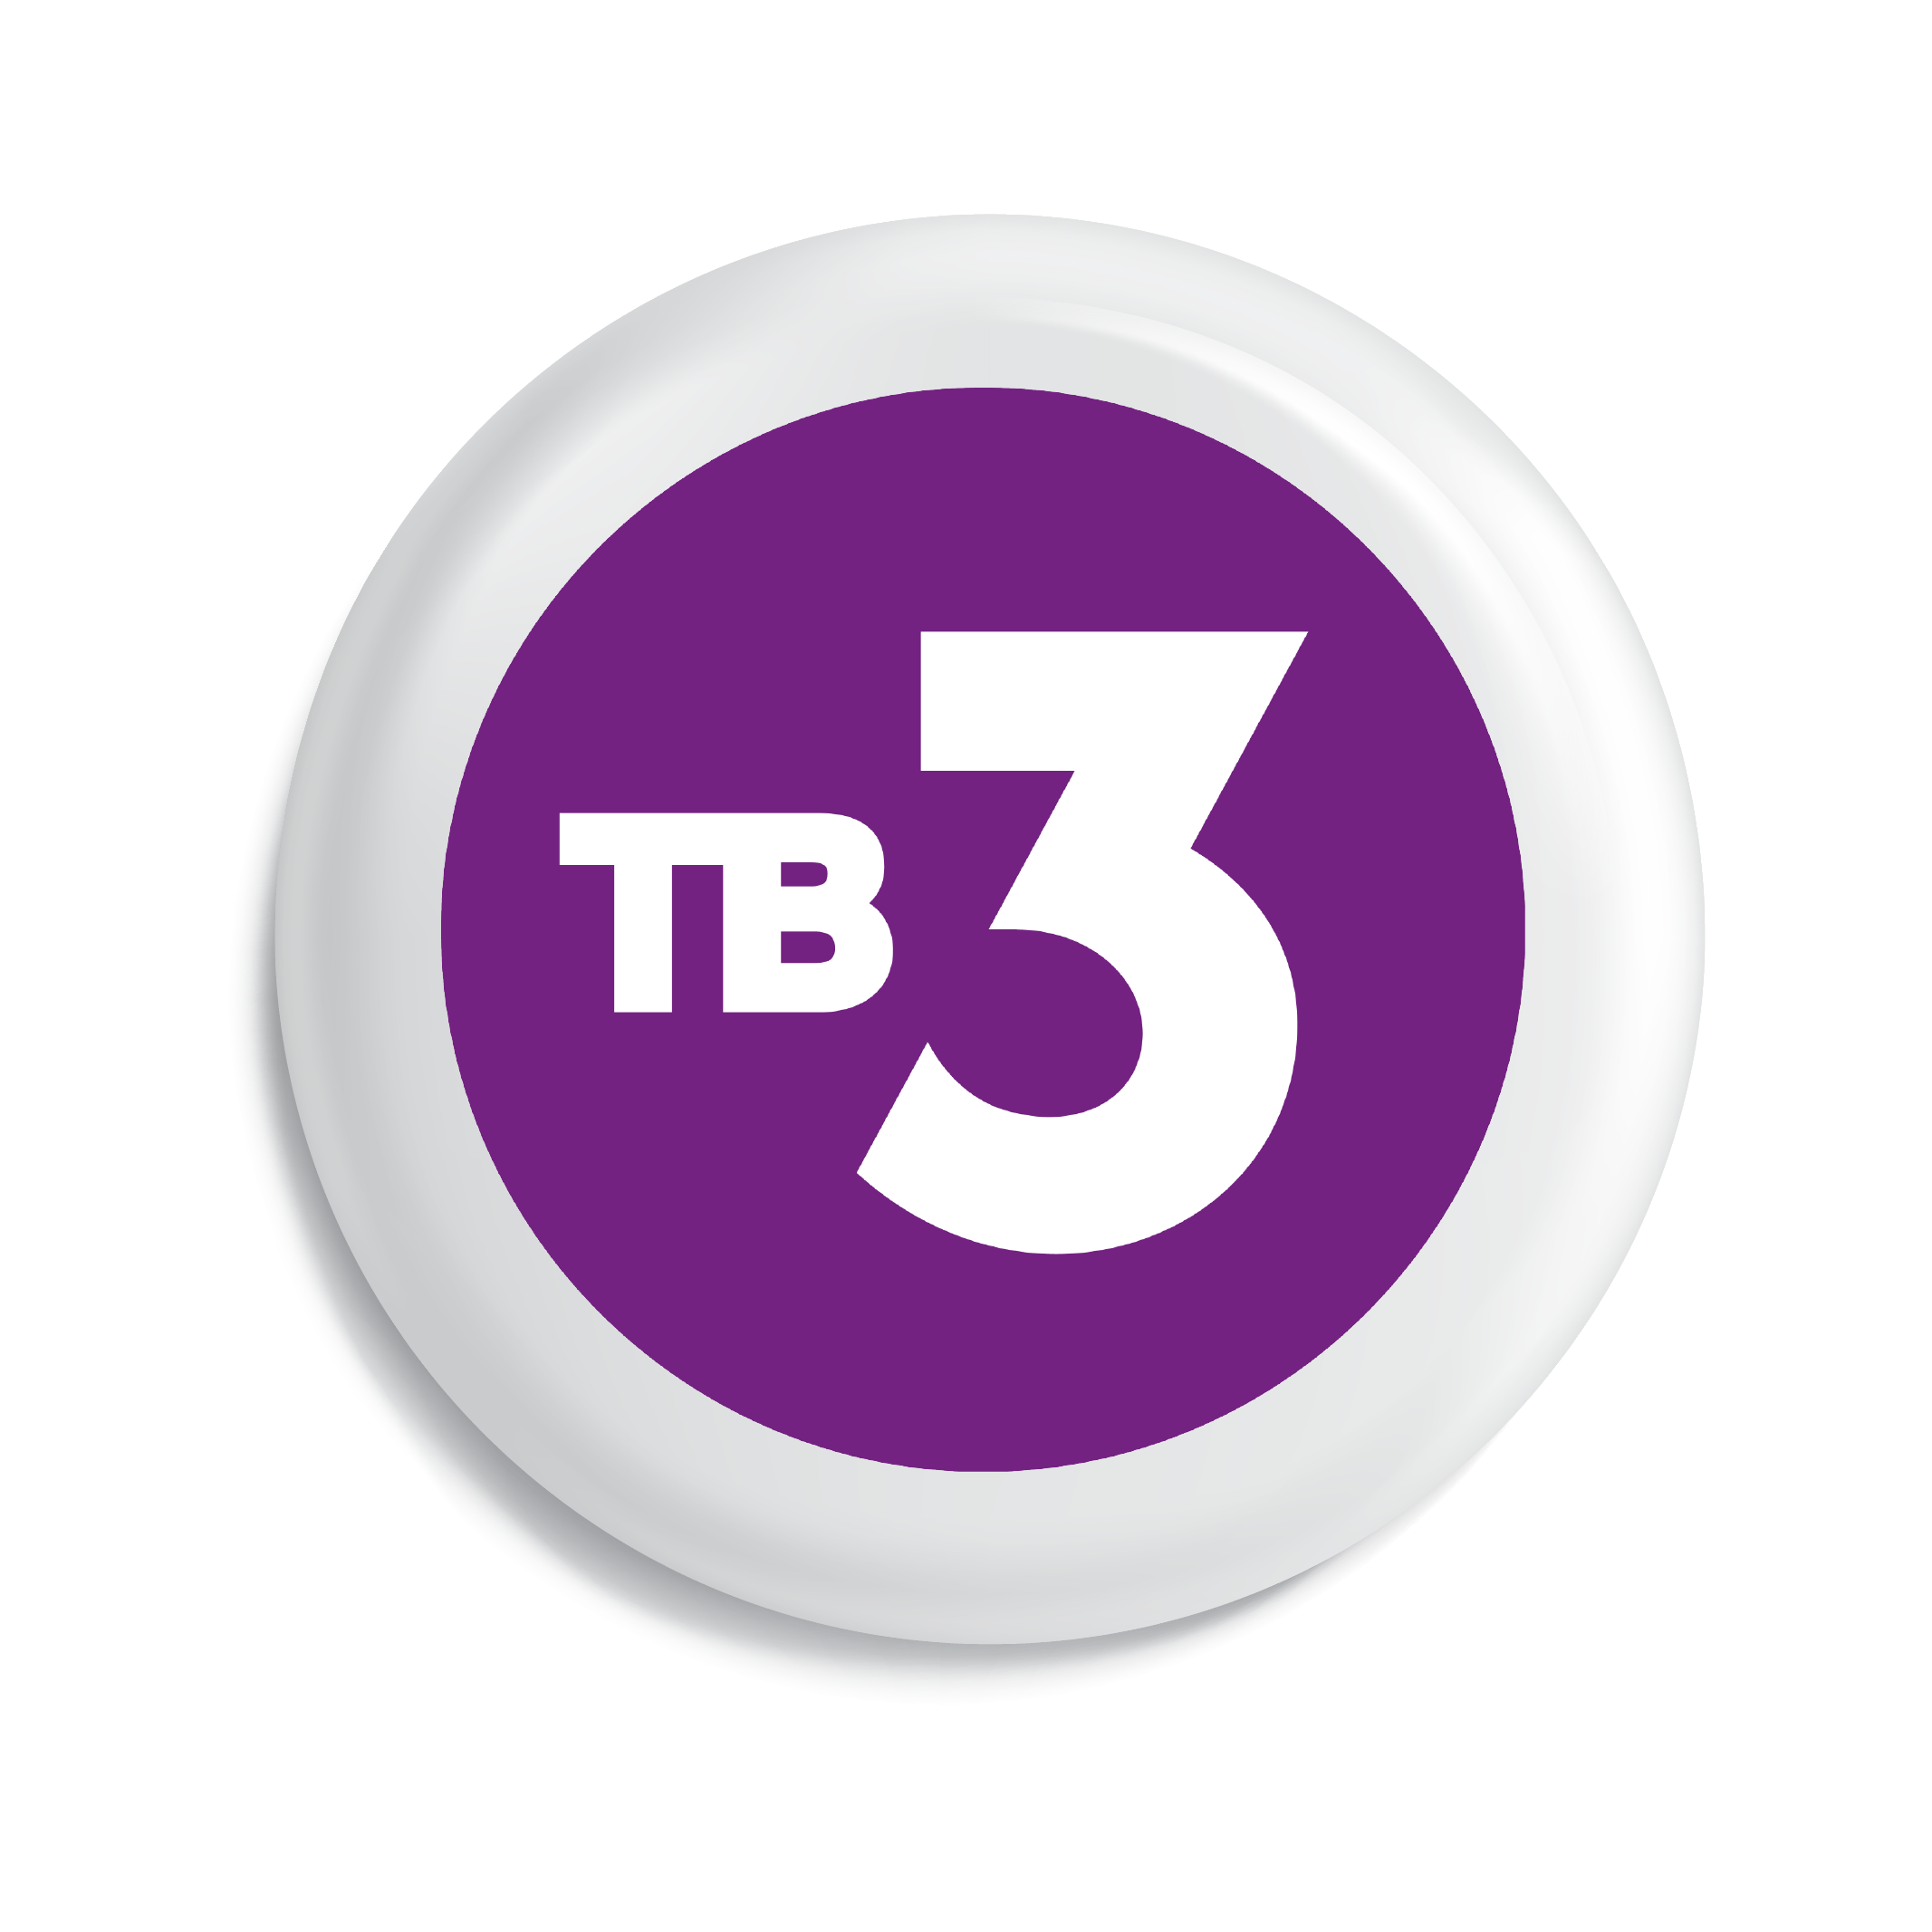 Тв3 логотип